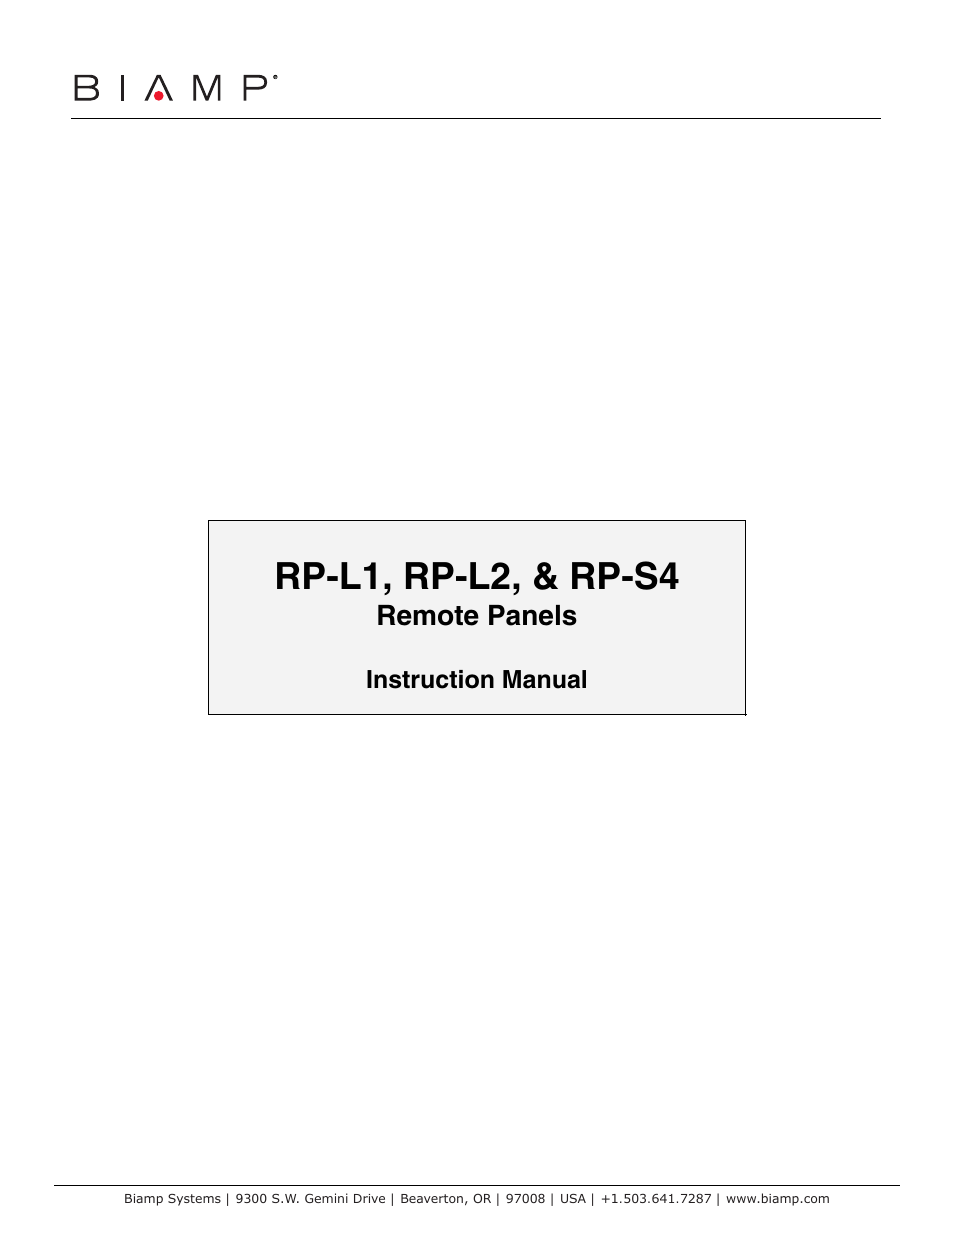 RP-L2